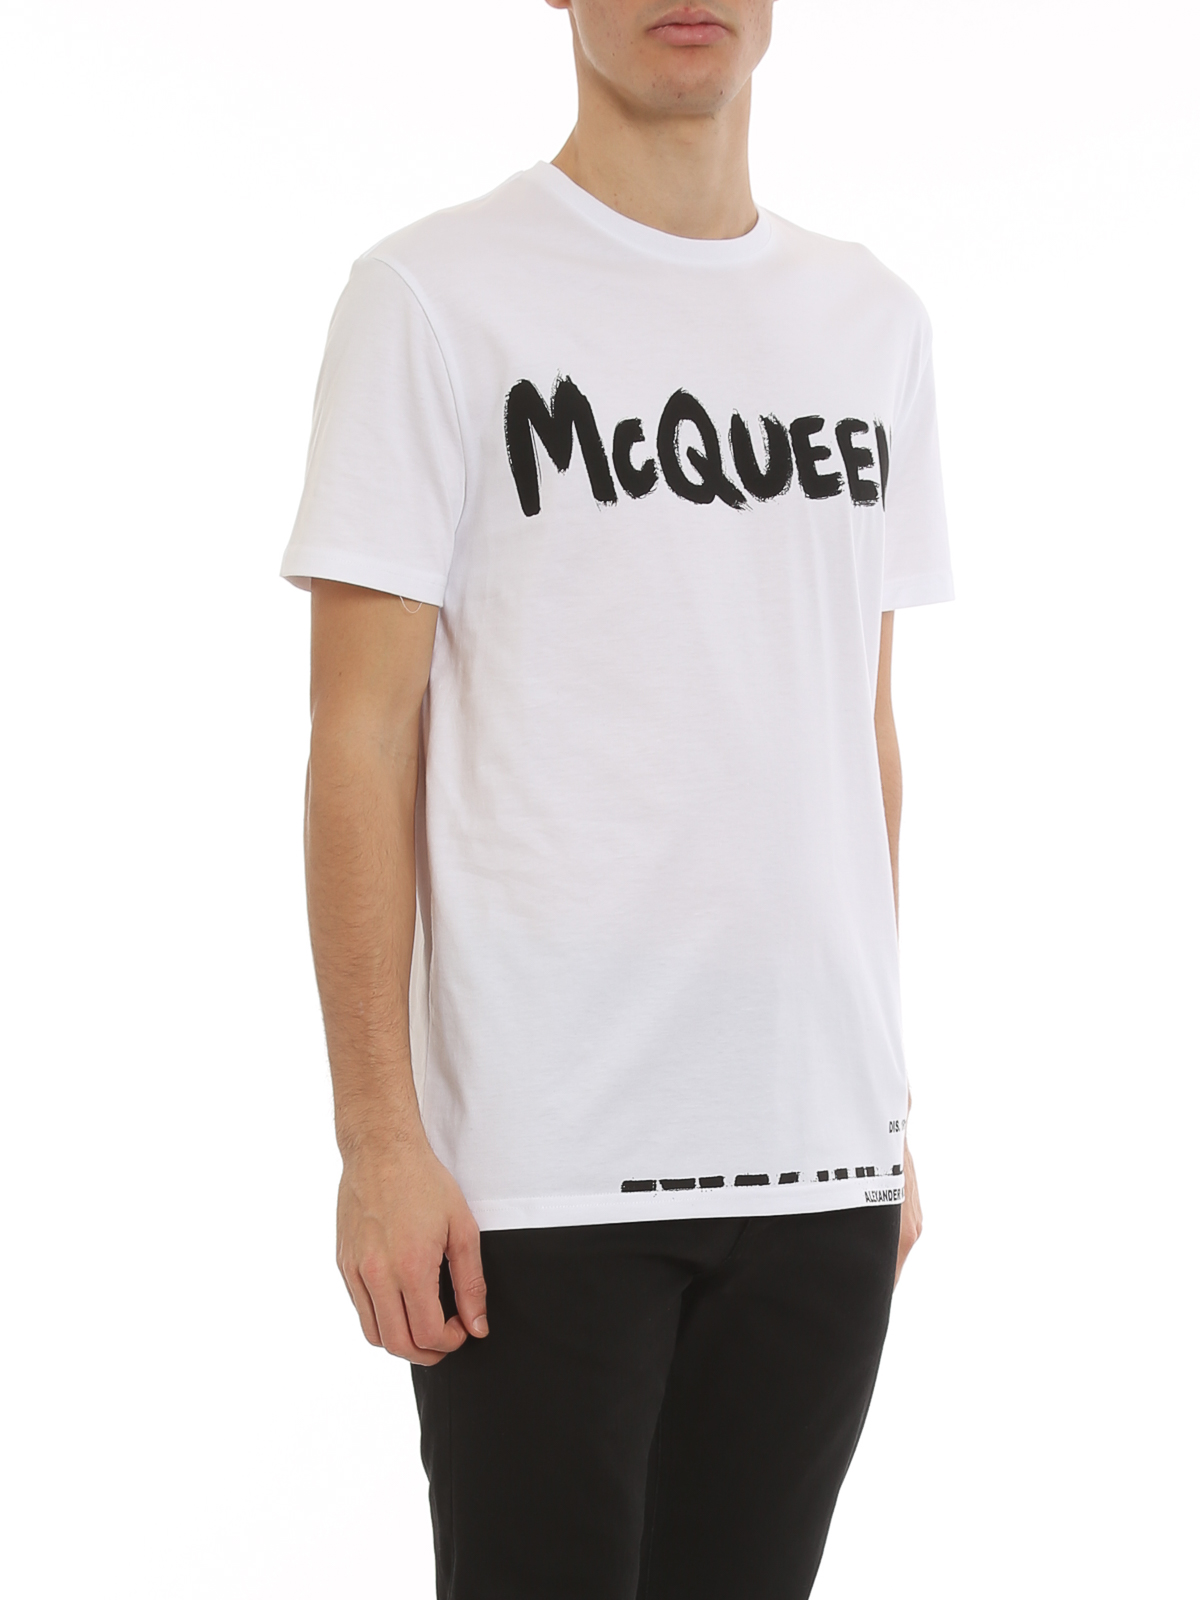 T-shirts Alexander Mcqueen - Graffiti logo T-shirt - 622104QSZ570900